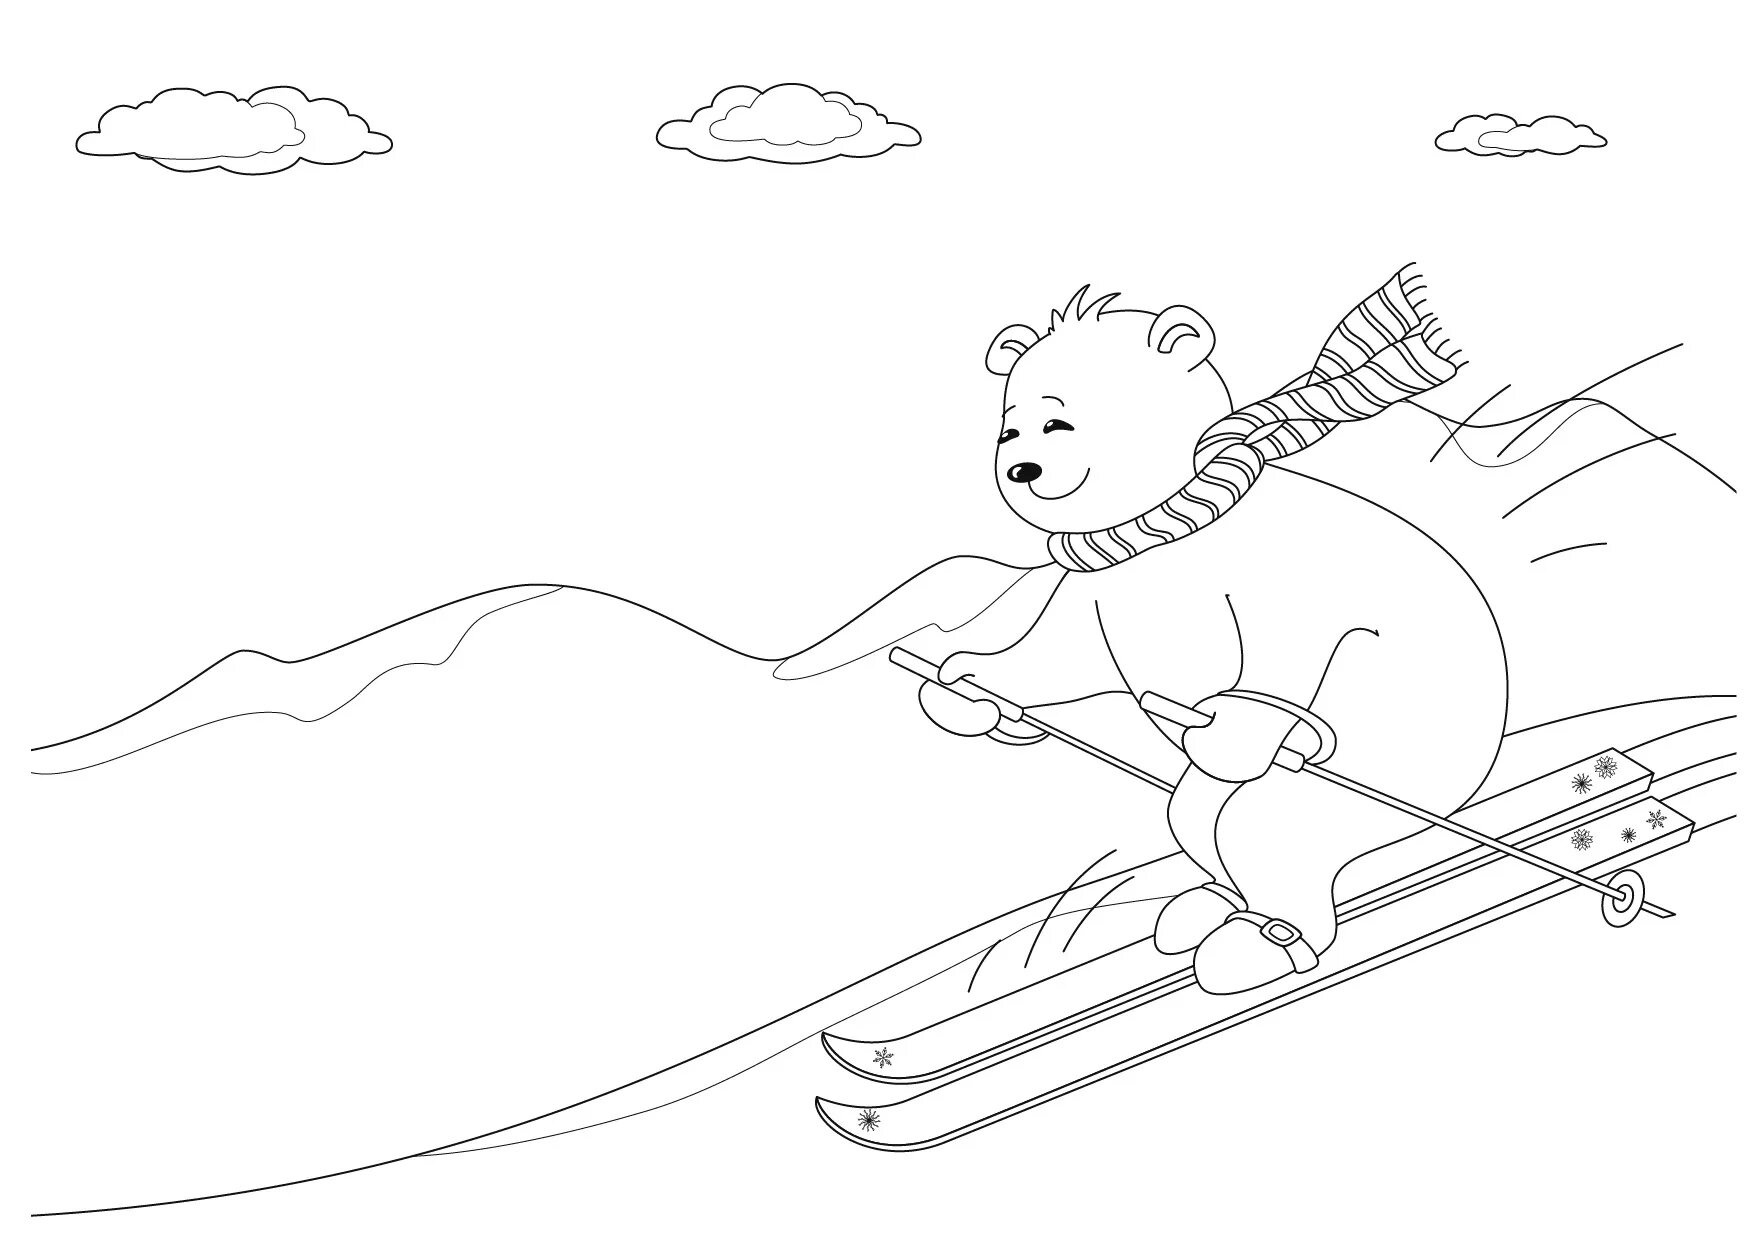 Teddy bear on skis #2